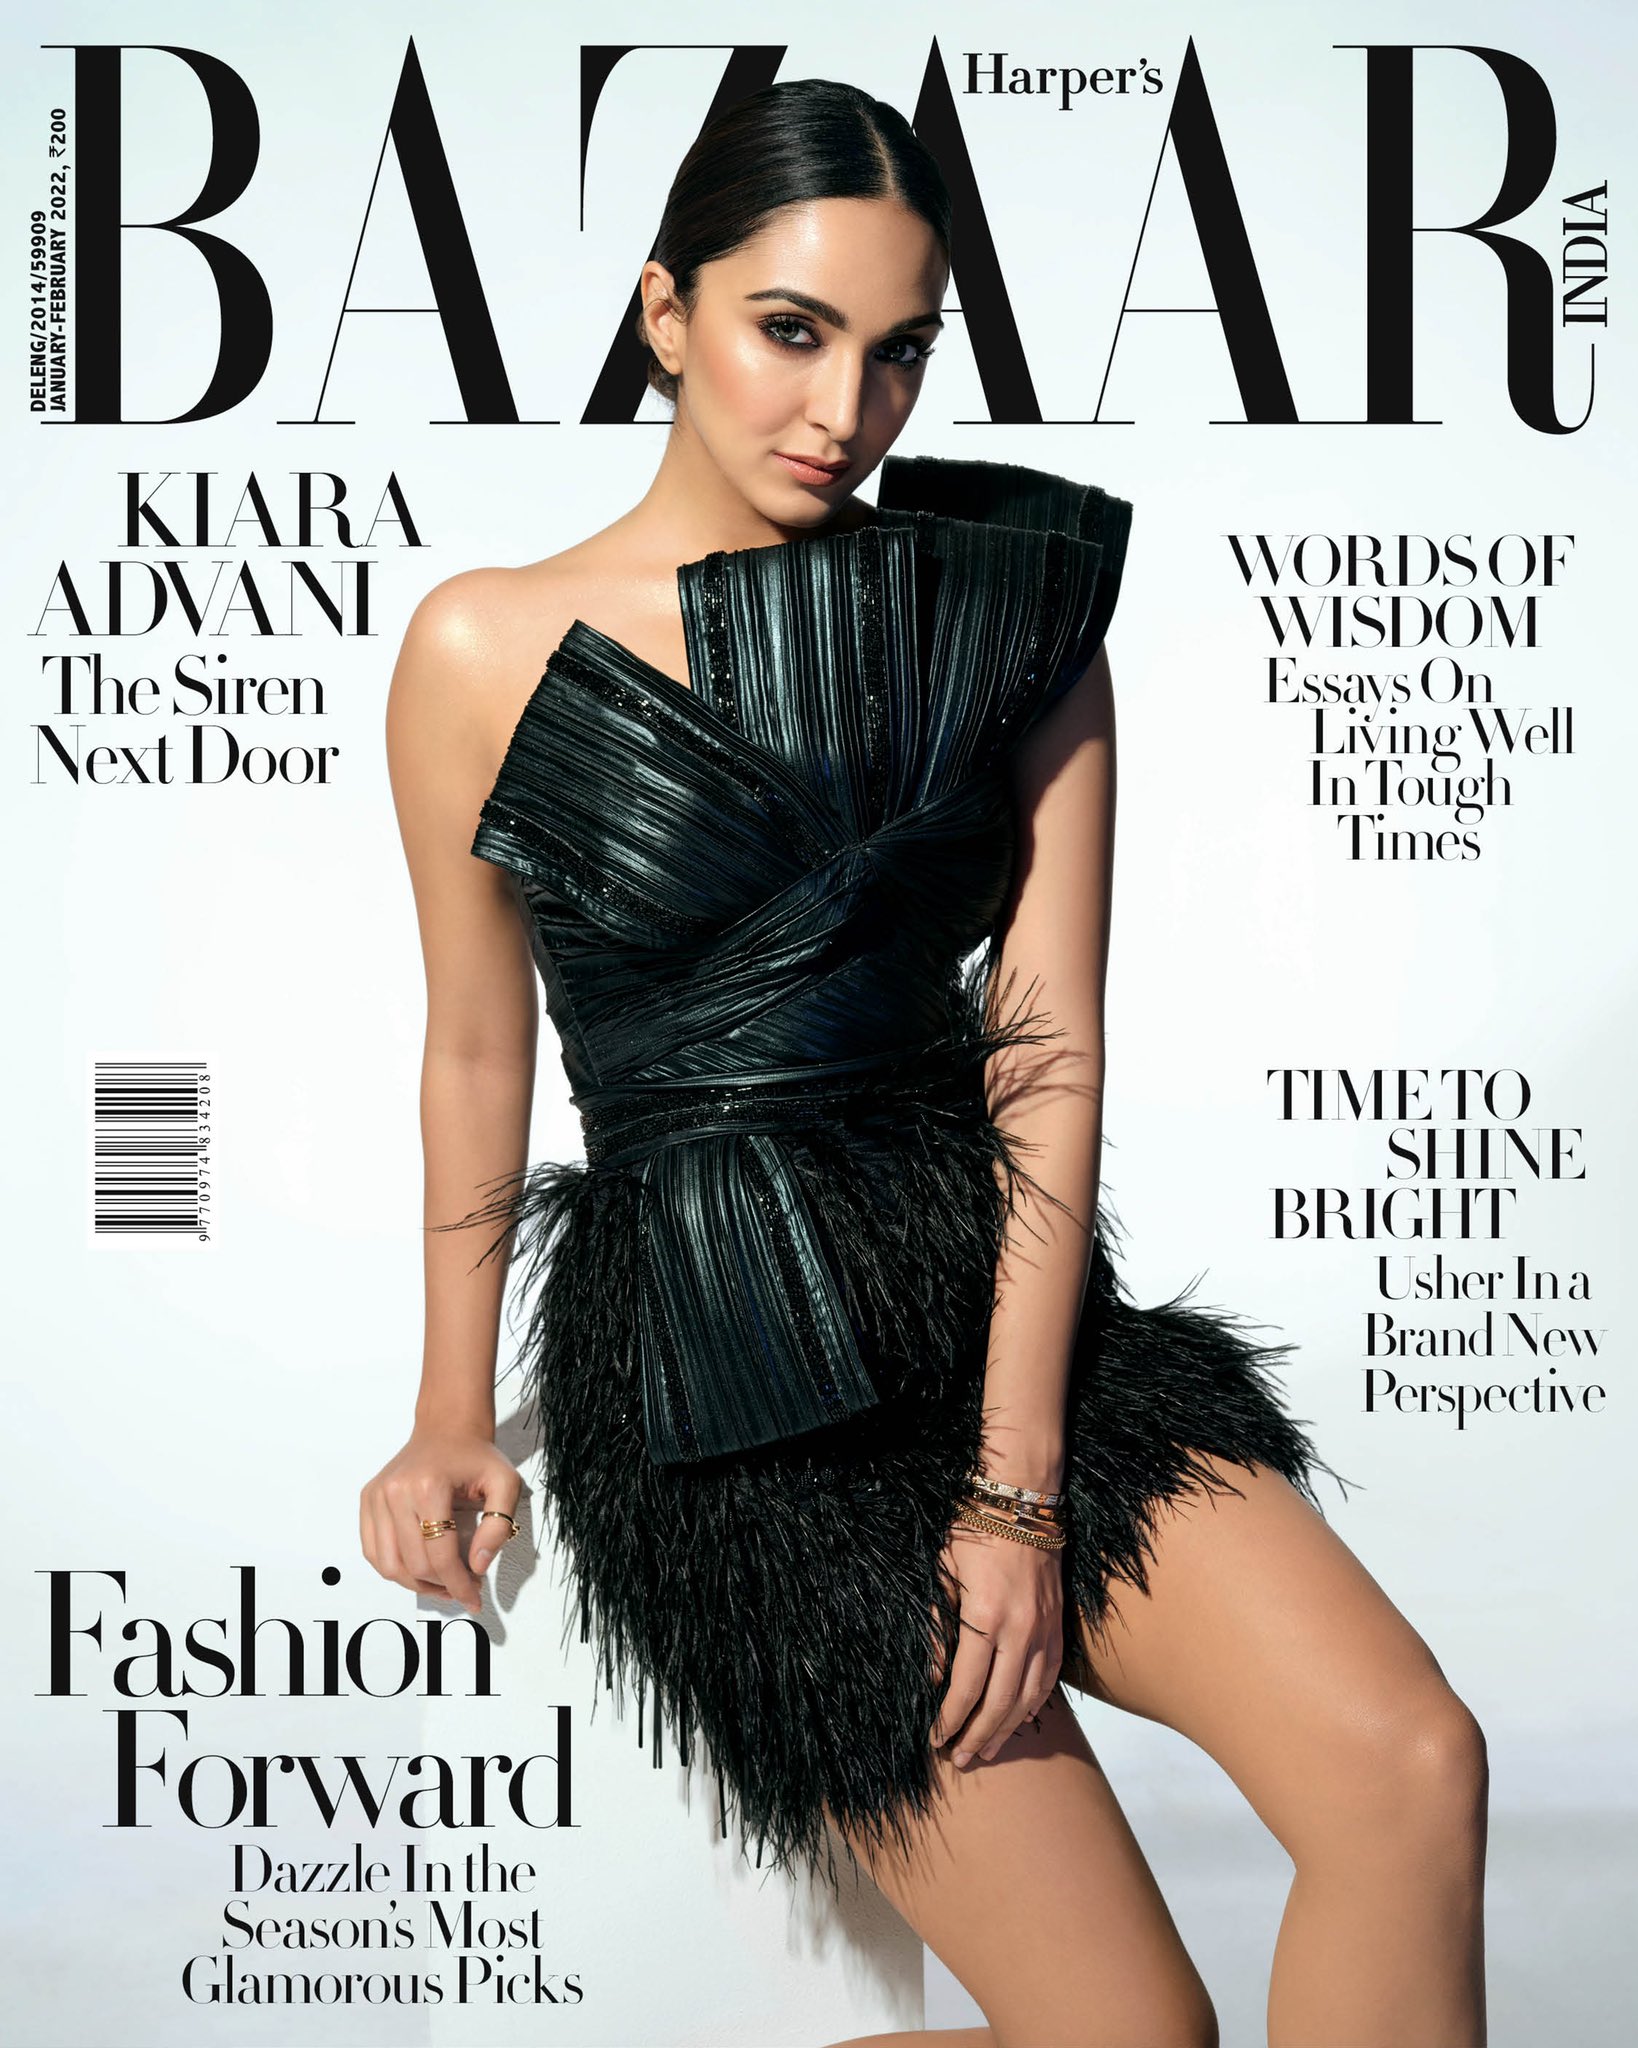 Kiara Advani shot for Harper's Bazaar Magazine cover.